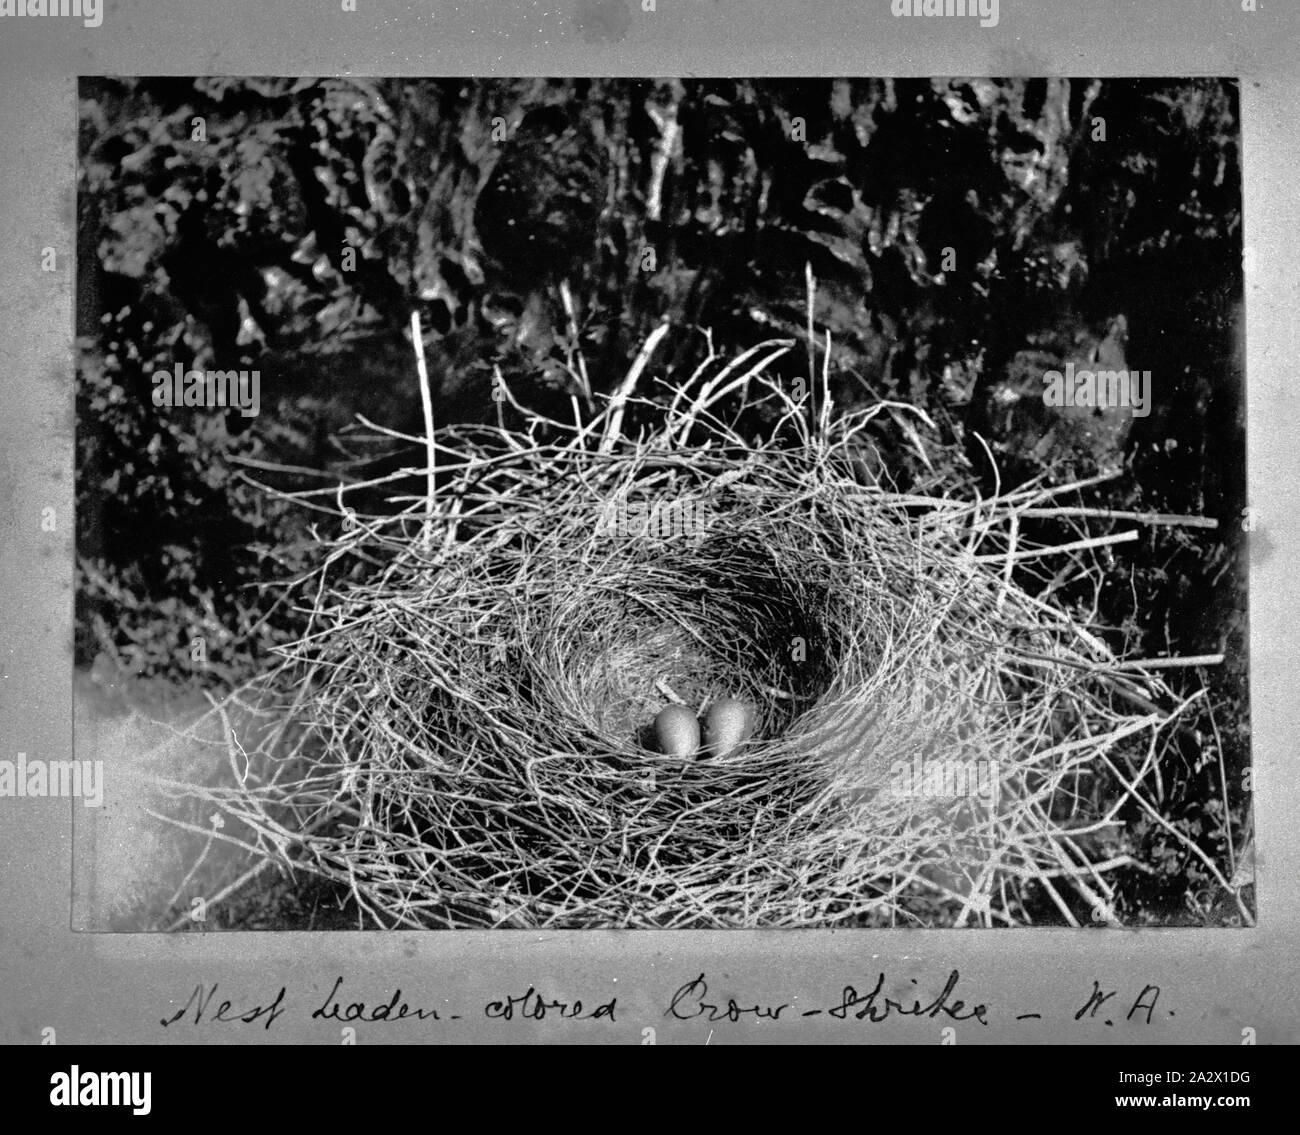 Fotografie - von A.J. Campbell, Western Australia, ca. 1890, das Nest einer Krähe Shrike mit zwei Eier Stockfoto